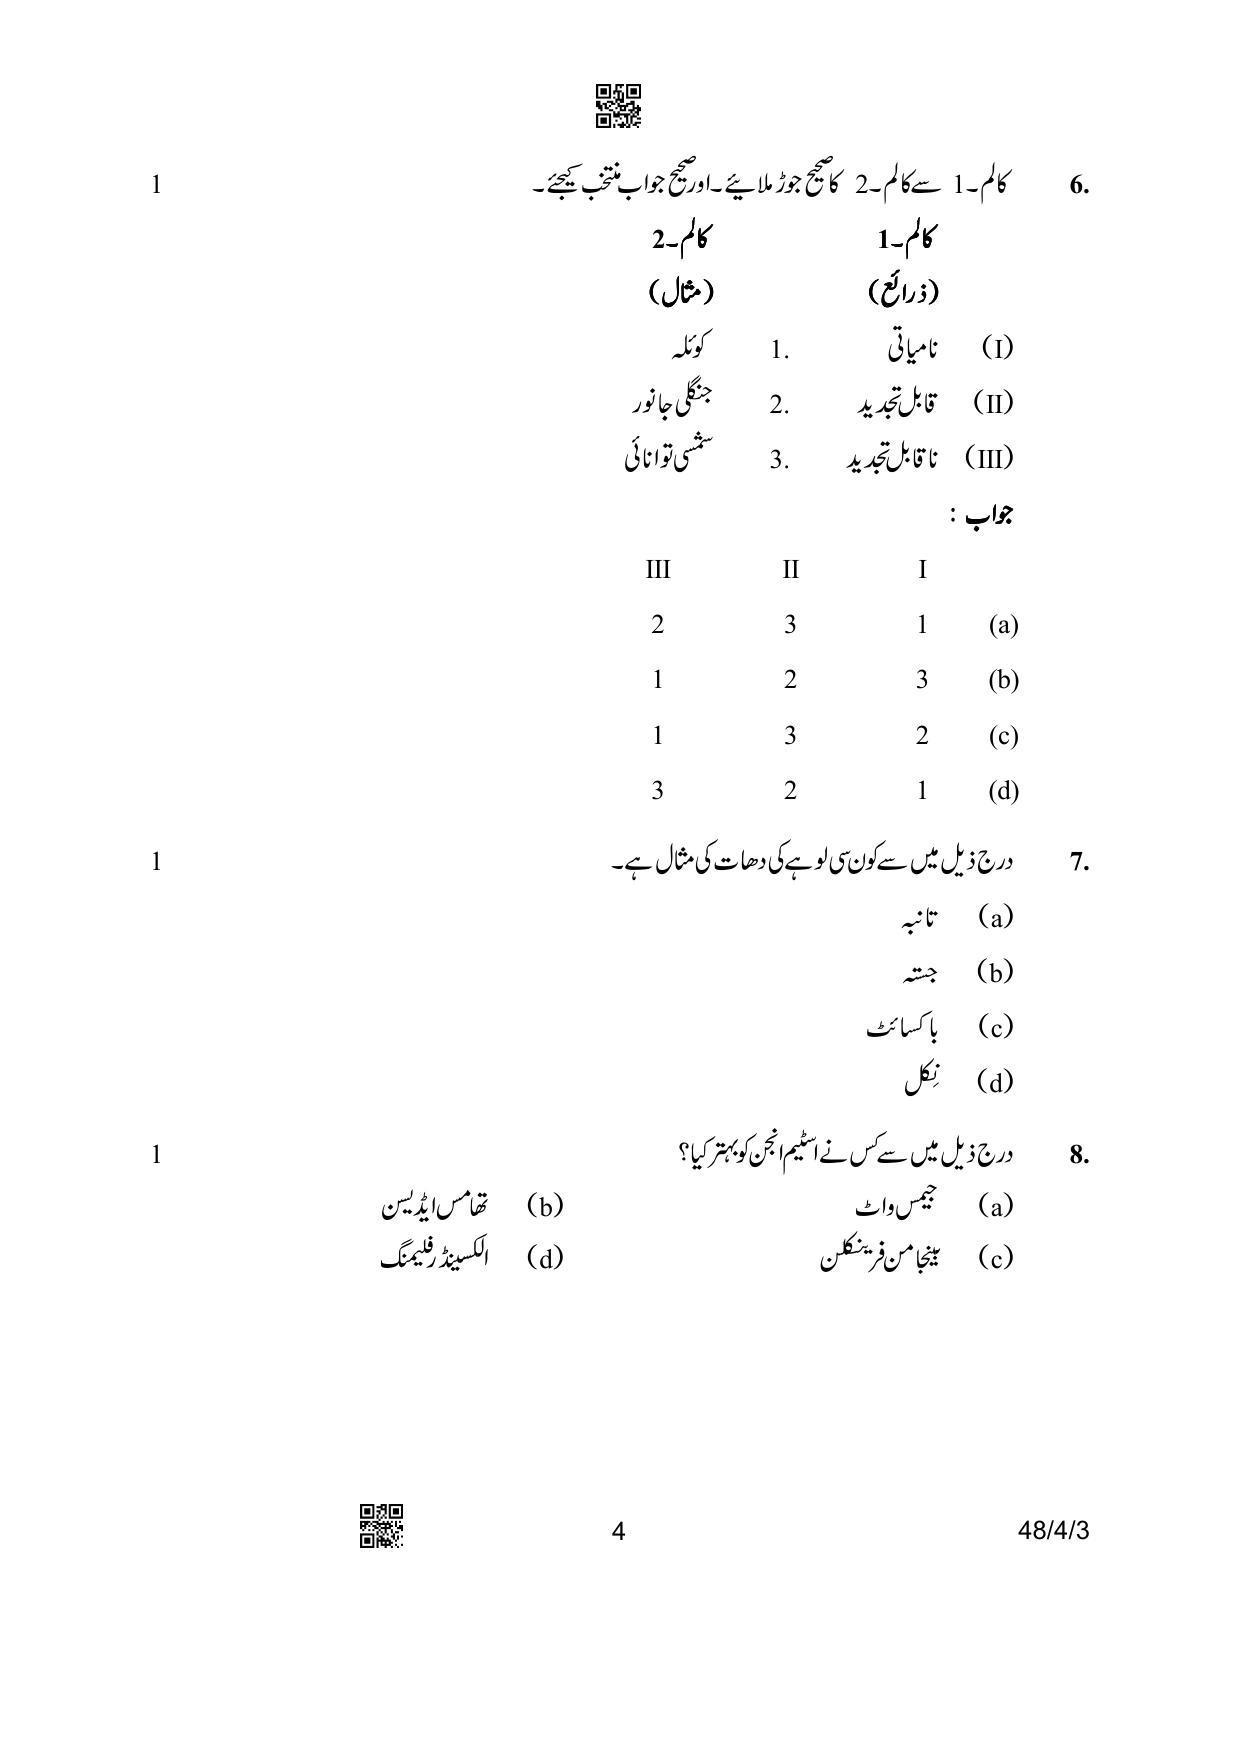 CBSE Class 10 48-4-3 Social Science Urdu Version 2023 Question Paper - Page 4